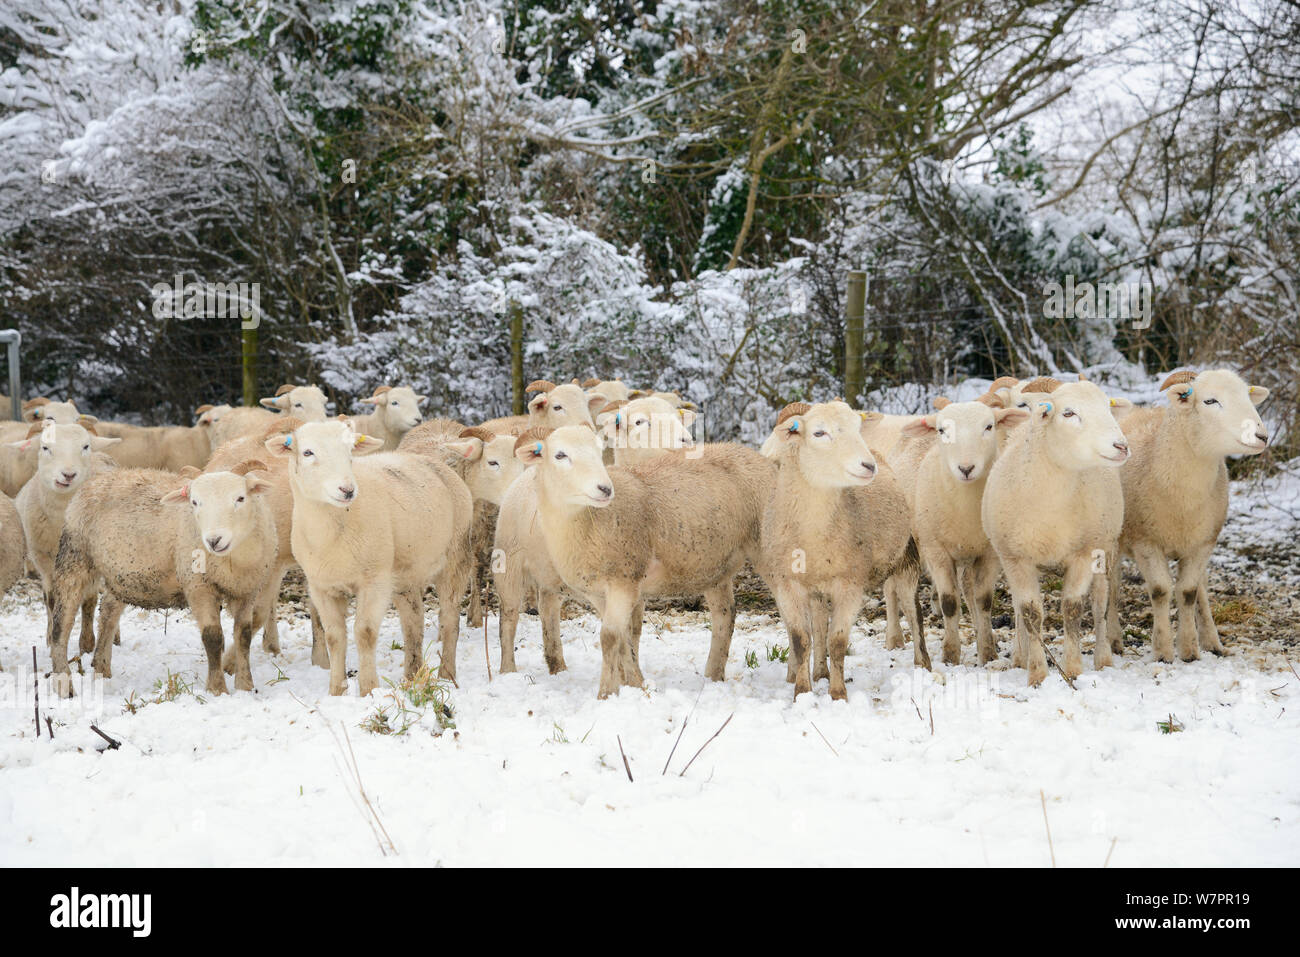 Troupeau de Wiltshire Horn Sheep (Ovis aries) sur les pâturages couverts de neige, Wiltshire, Royaume-Uni, Janvier 2013 Banque D'Images